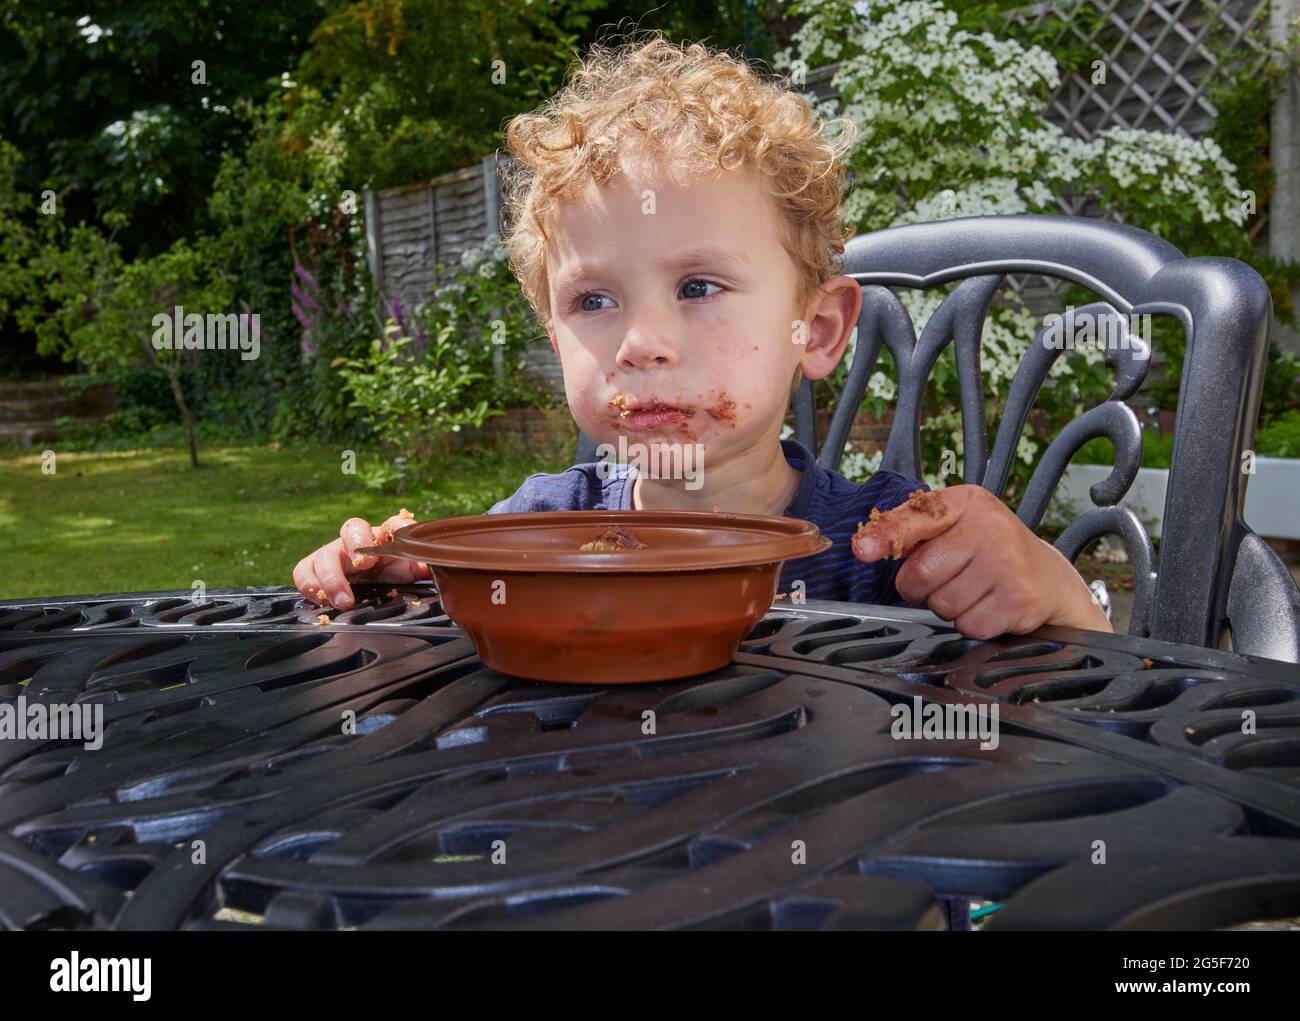 Un chico pequeño caucásico blanco pegajoso de casi 3 años de edad con pelo rubio rizado se sienta al aire libre con una boca marrón rubia comiendo pastel de chocolate Foto de stock